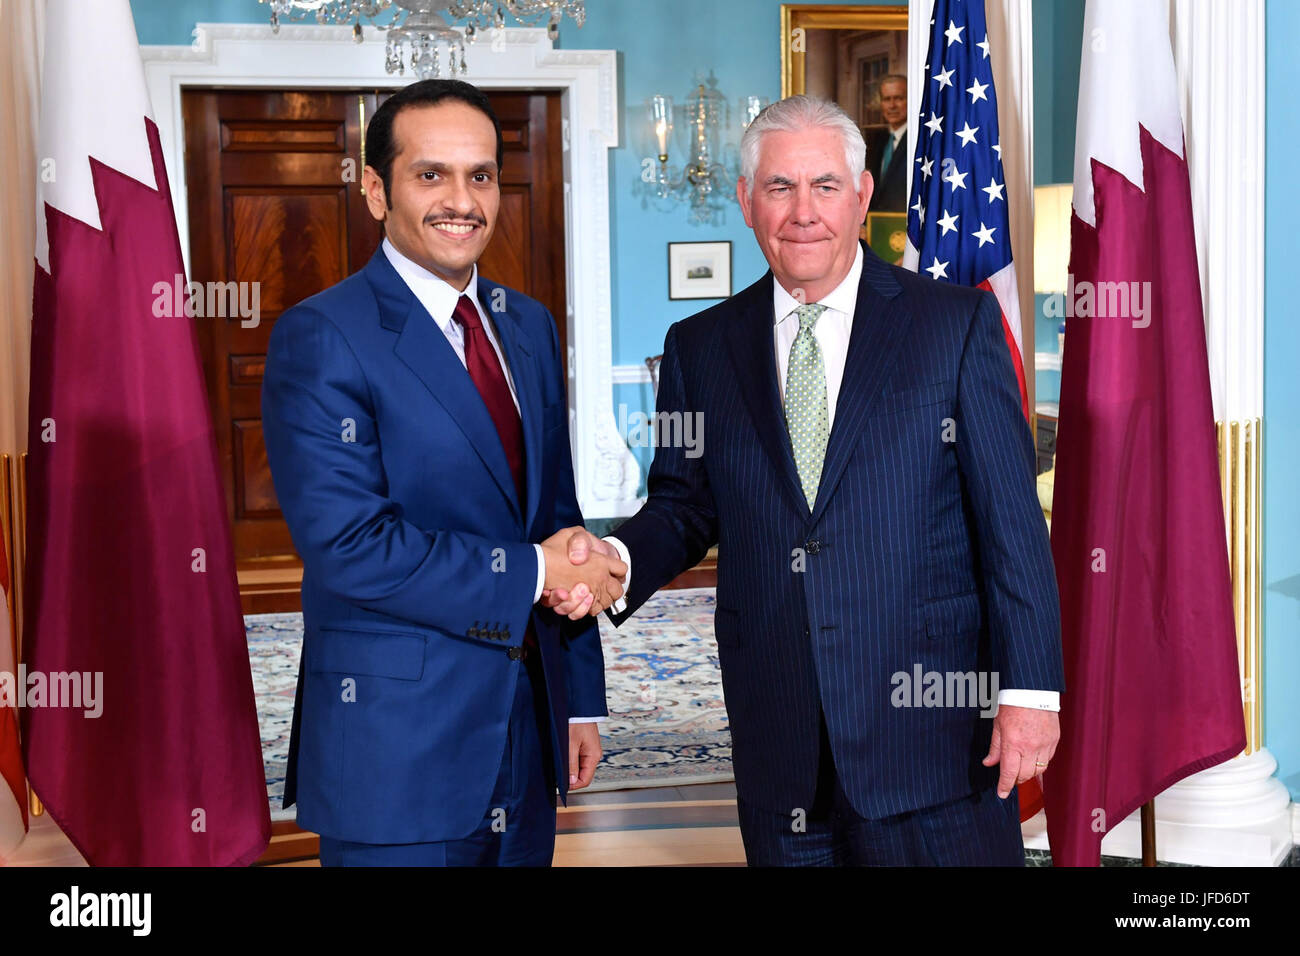 La secrétaire d'État des États-Unis, Rex Tillerson pose pour une photo avec le Ministre des affaires étrangères du Qatar, Cheikh Mohammed bin Abdulrahman Al Thani avant leur réunion au Département d'État des États-Unis à Washington, D.C., le 27 juin 2017. Banque D'Images